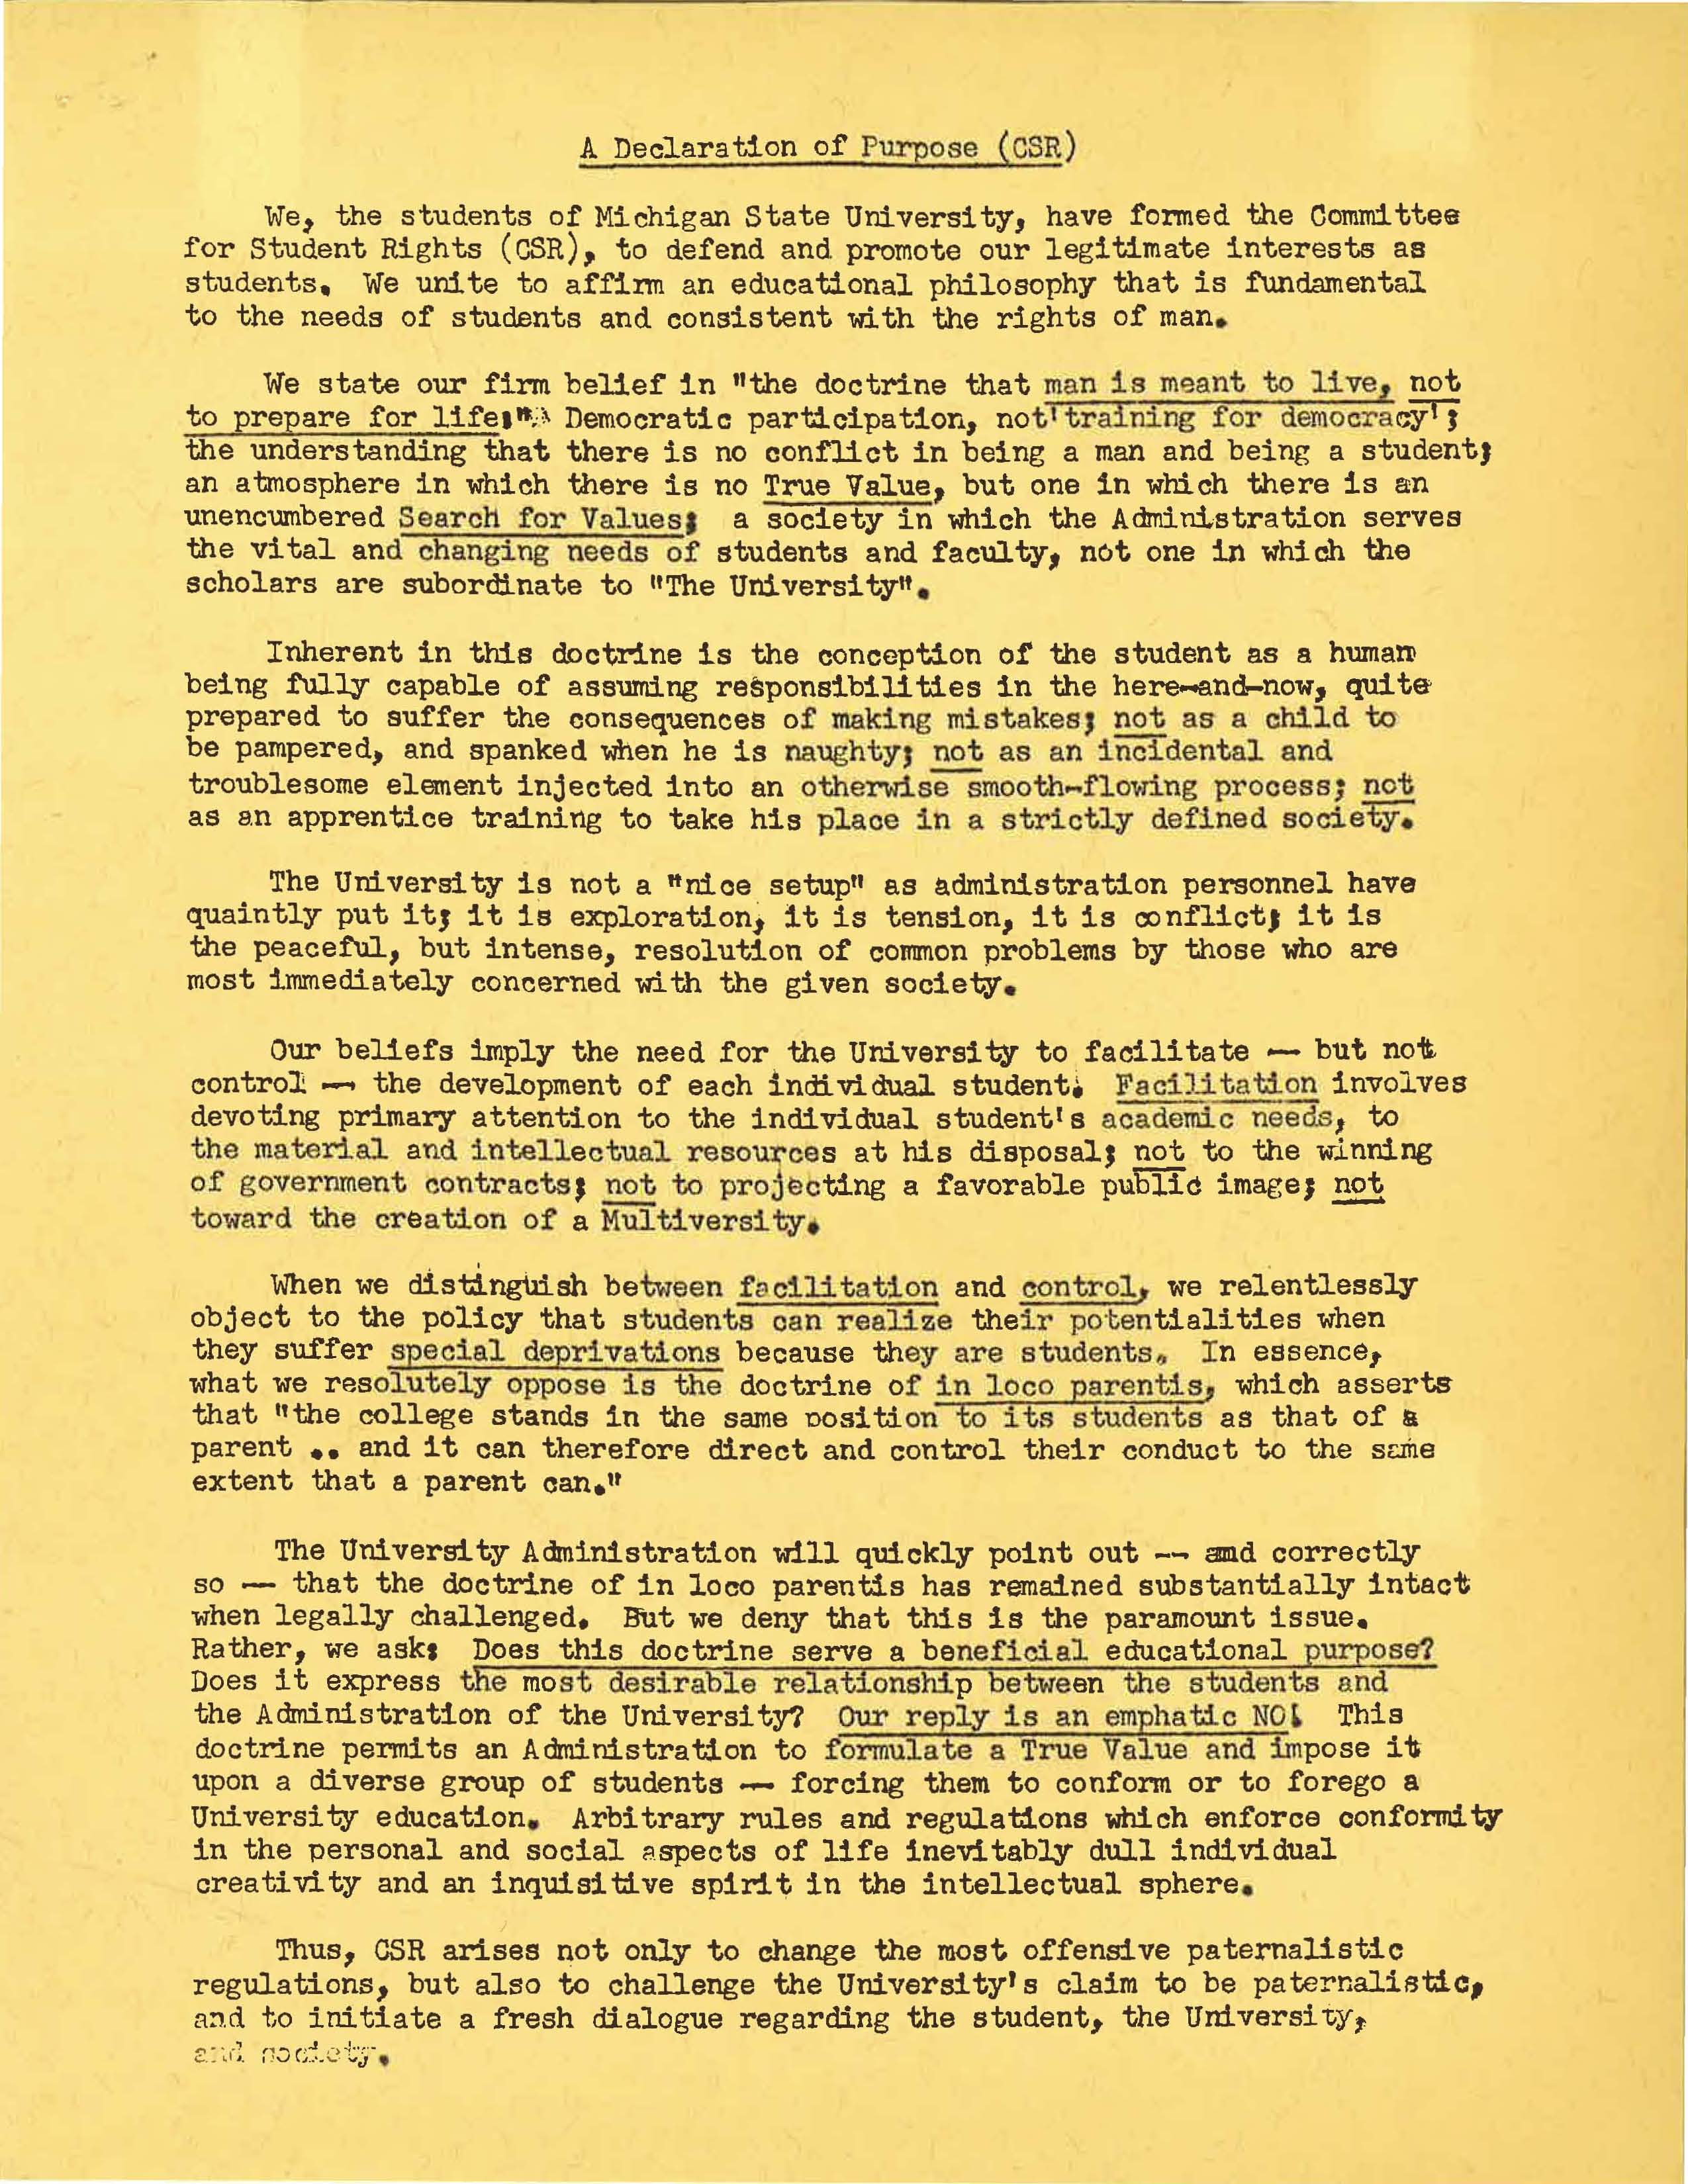 Declaration of Purpose, 1965